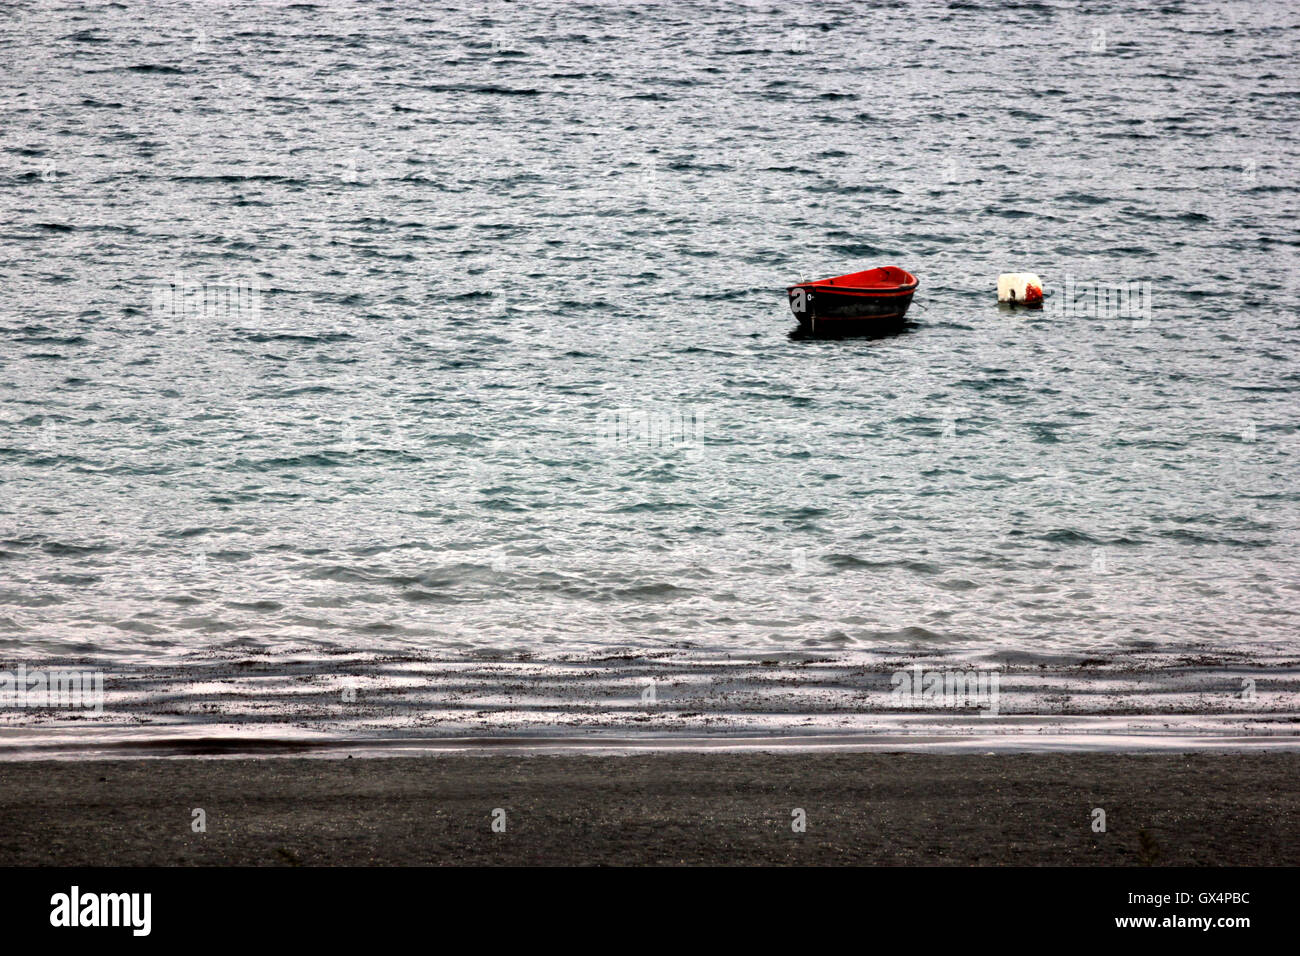 a red boat near the shore of  the lake, lago di Albano, Castel Gandolfo, Italy Stock Photo